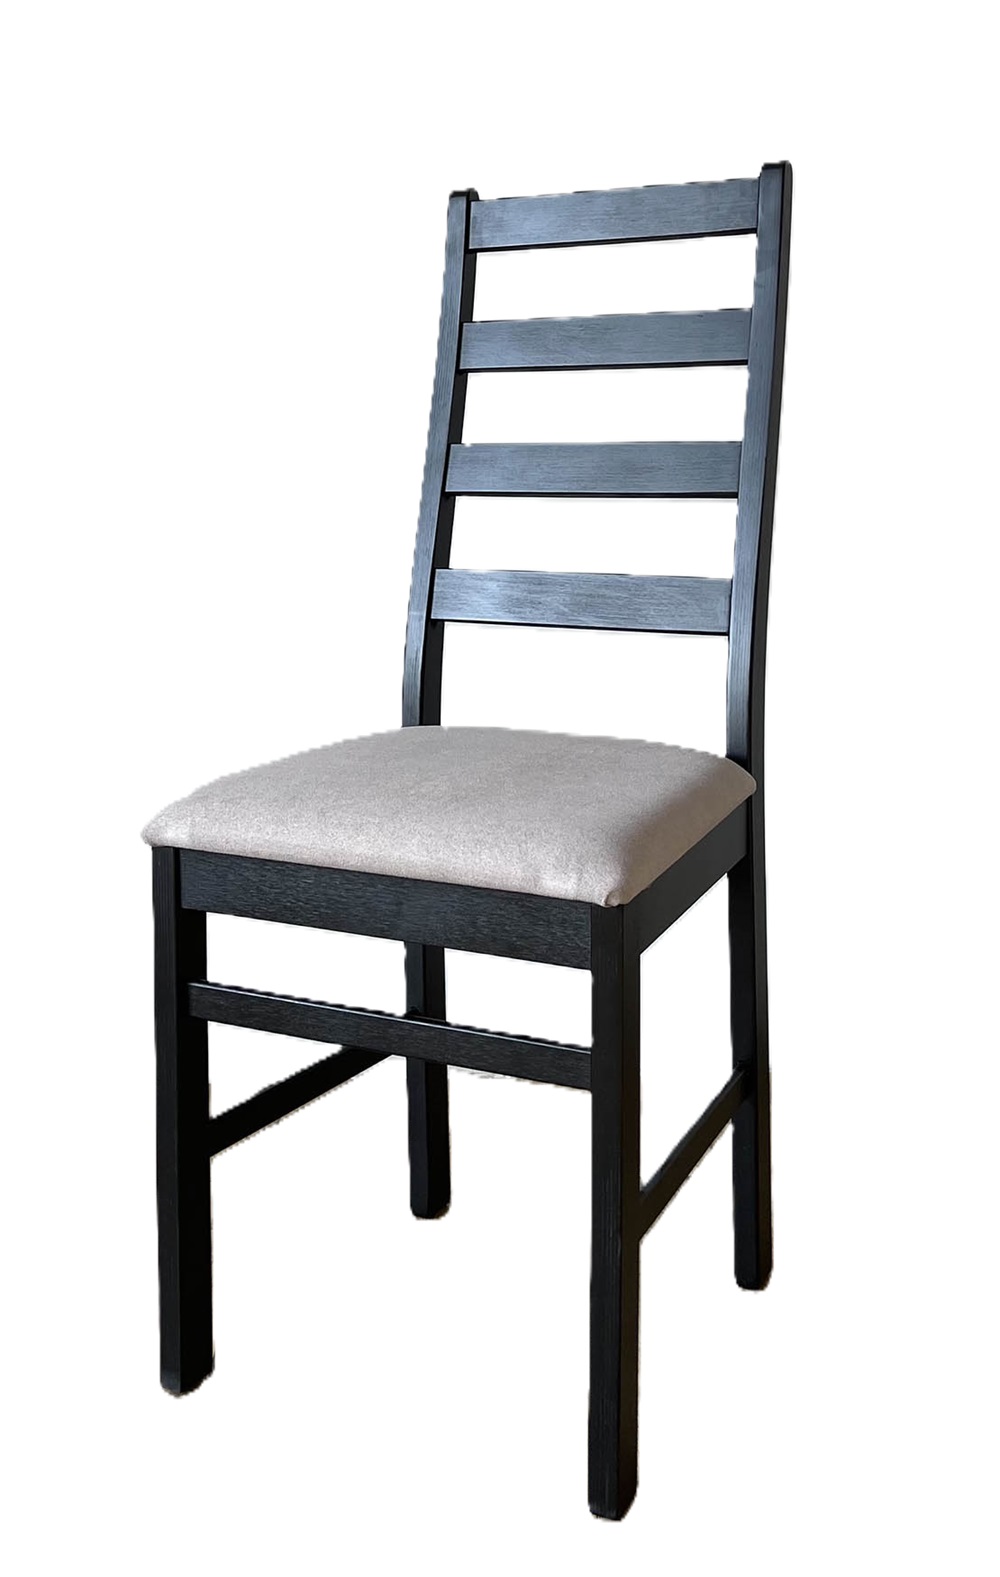 Деревянный стул со спинкой. Обивка из микровелюра. Цвет венге/серый.